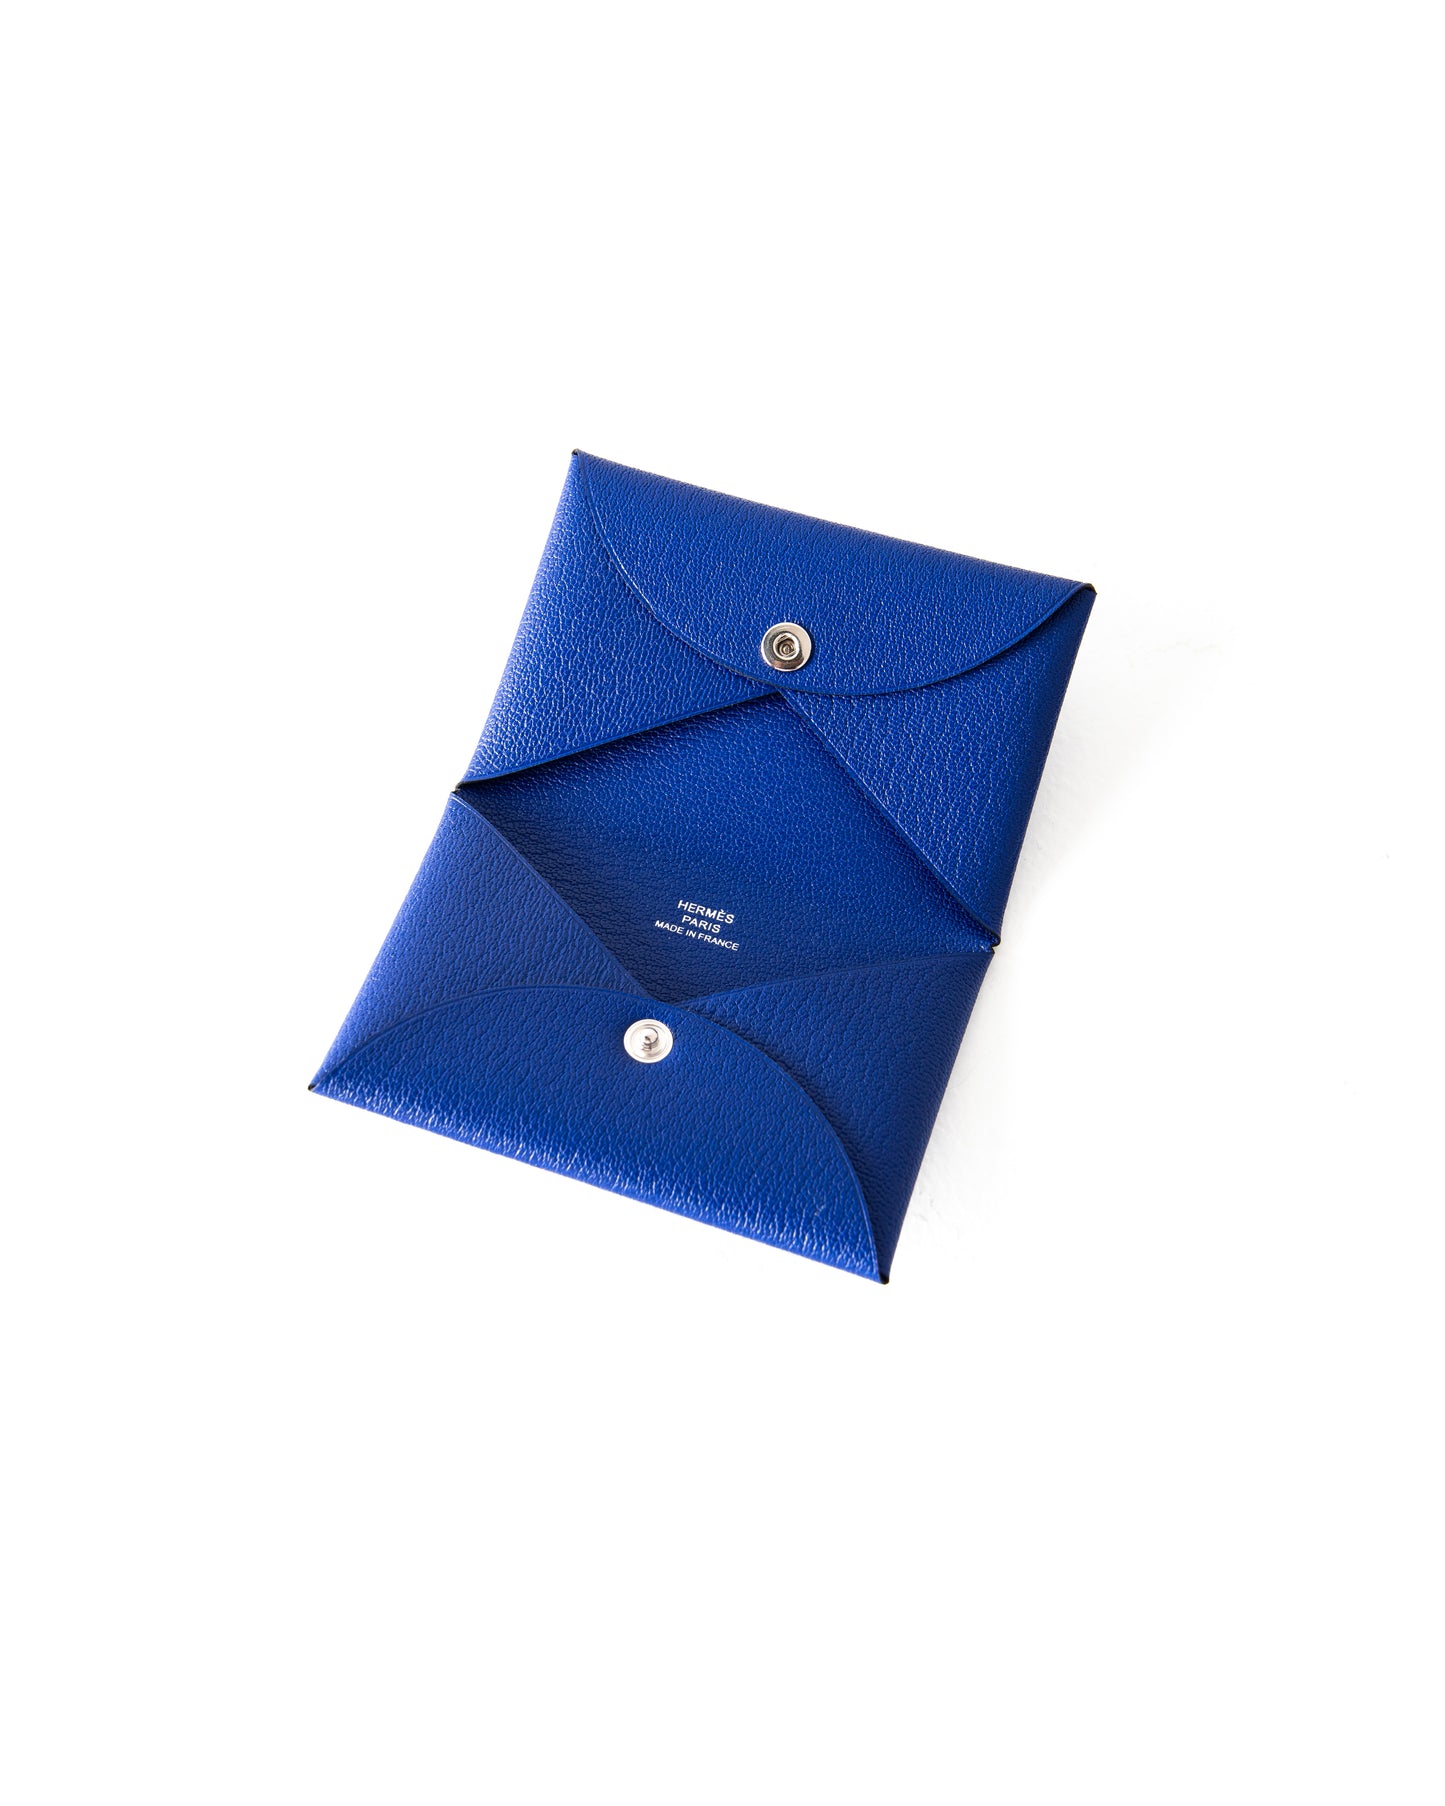 Calvi Card Holder in Bleu Electrique Chevre